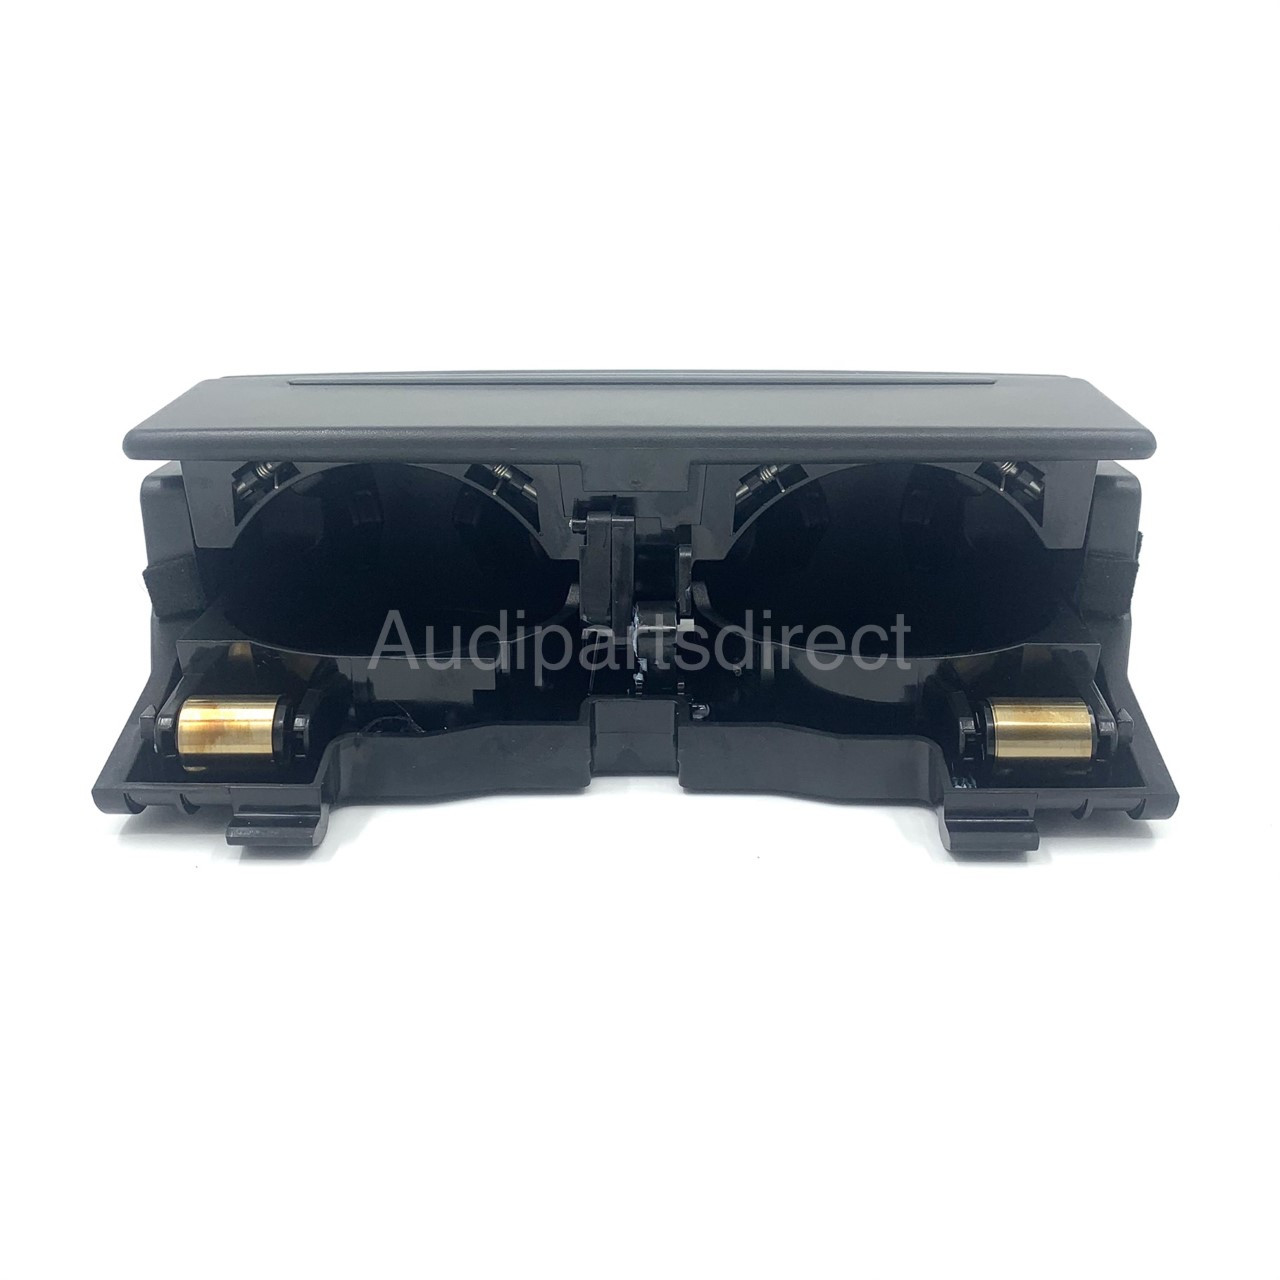 Genuine Audi e-tron / A6 & A7 2019+ rear armrest retrofit cup holder kit (black)